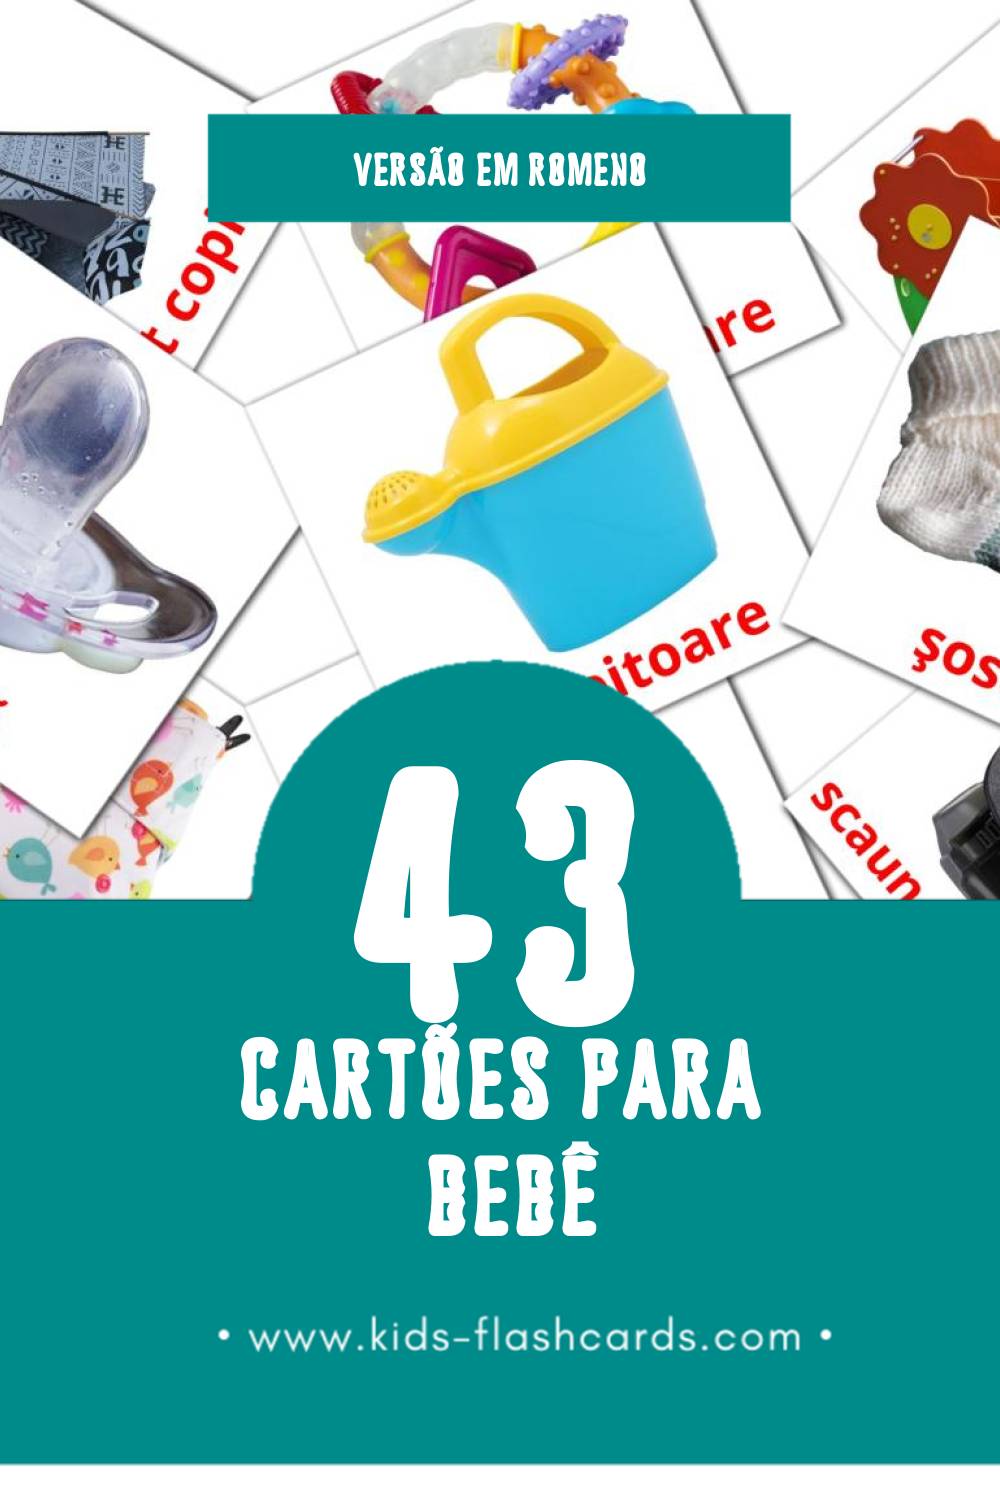 Flashcards de Bebe Visuais para Toddlers (43 cartões em Romeno)